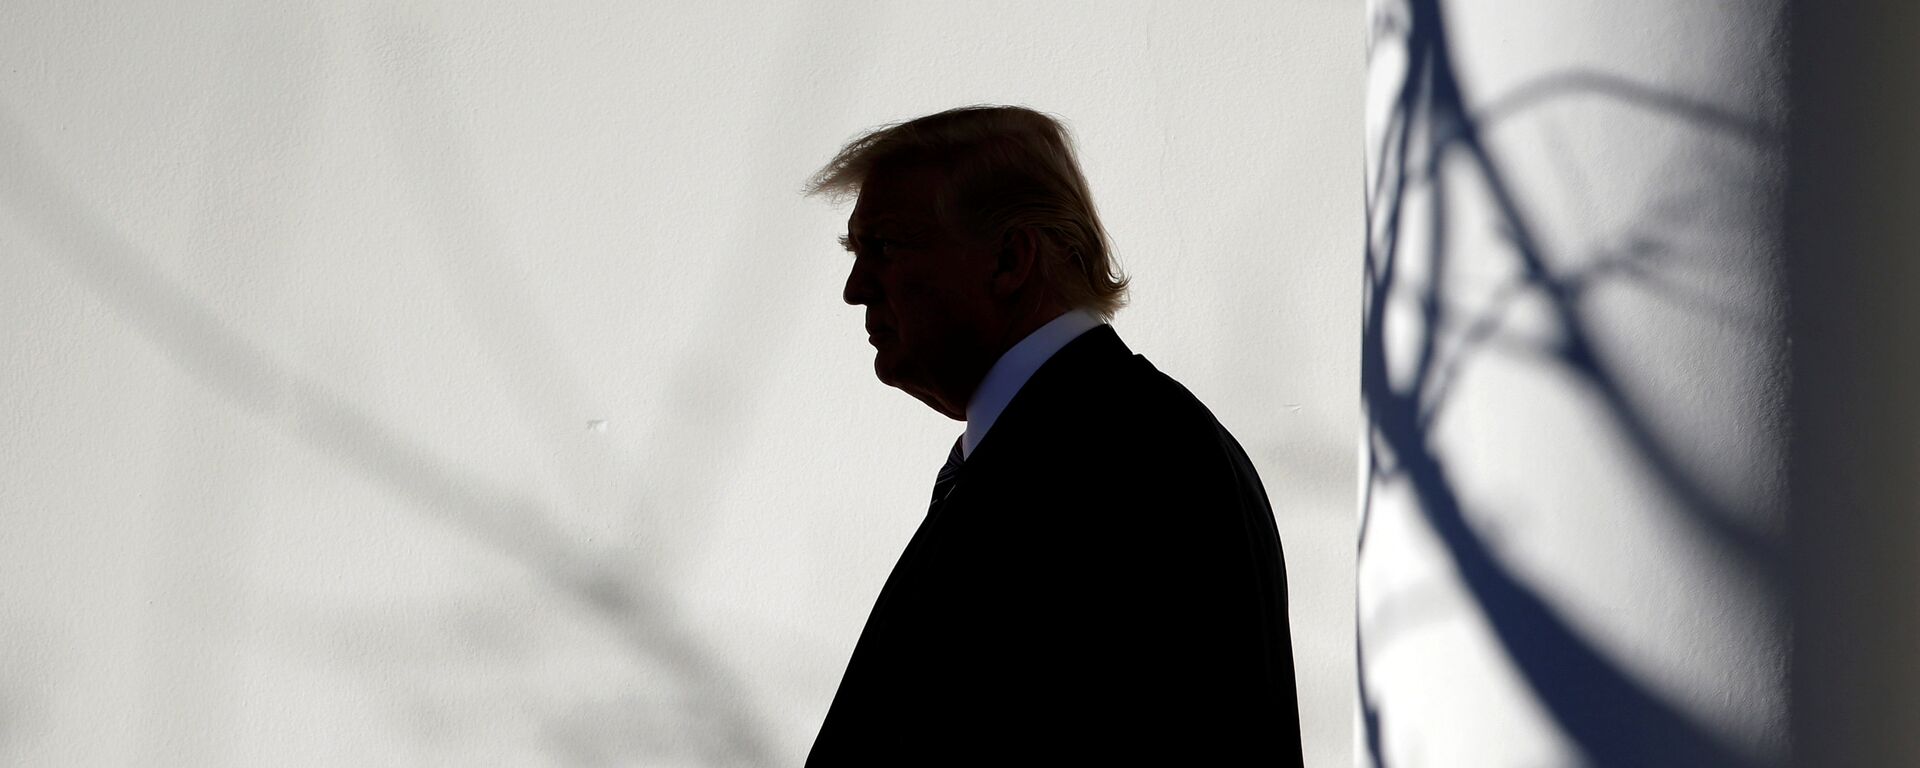 Tổng thống Hoa Kỳ Donald Trump đi bộ qua Đấu trường La Mã đến Phòng Bầu dục sau khi trở về Nhà Trắng ở Washington - Sputnik Việt Nam, 1920, 06.11.2019